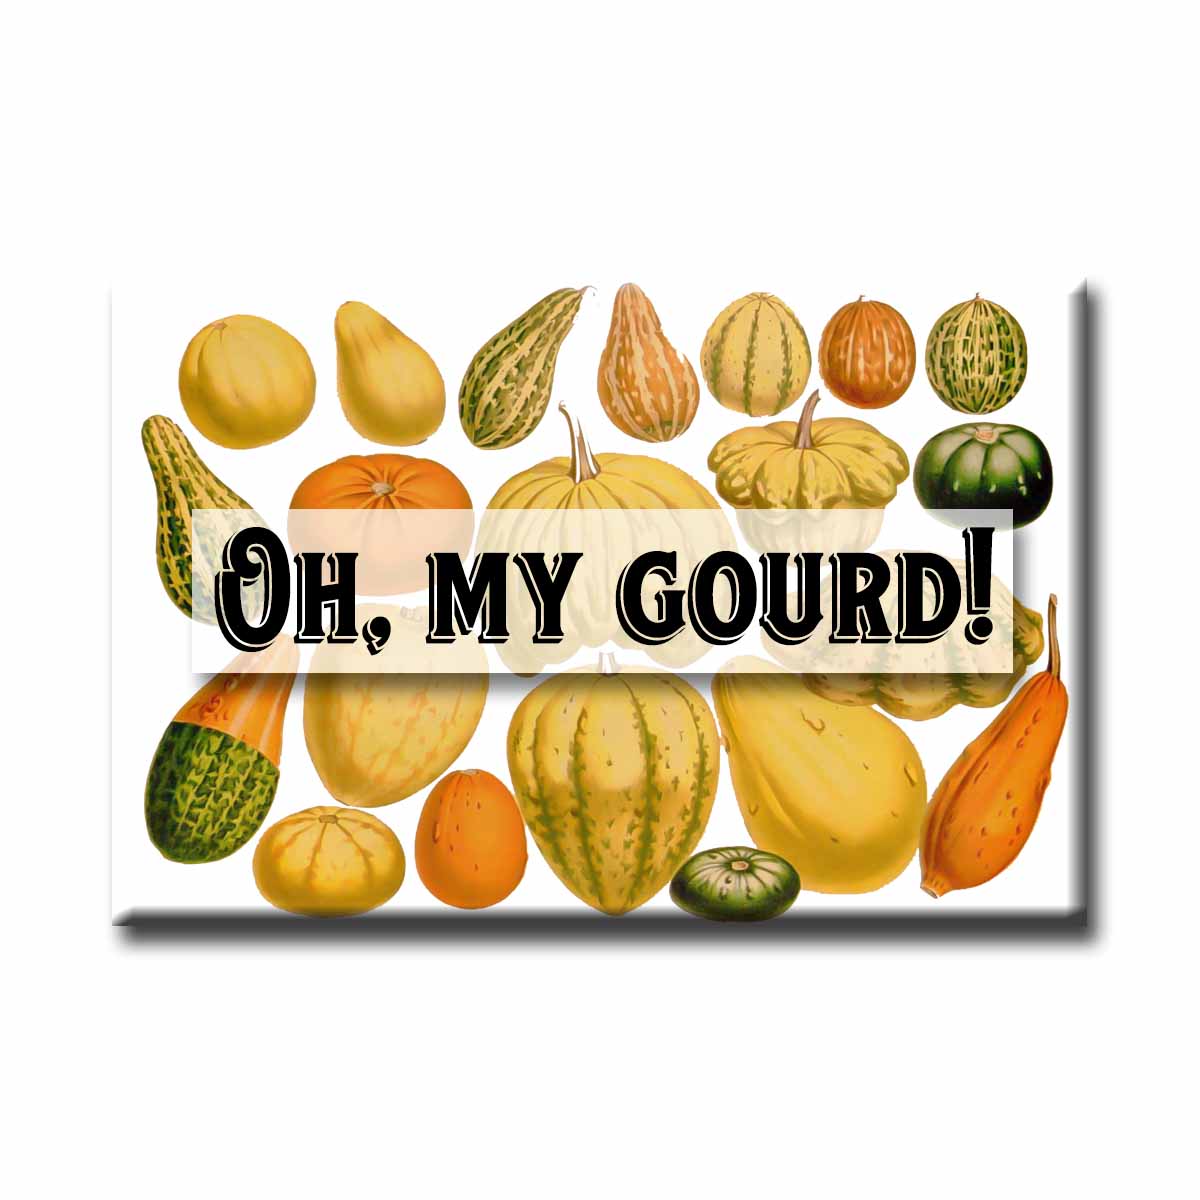 Oh My Gourd Vintage Illustration Refrigerator Magnet